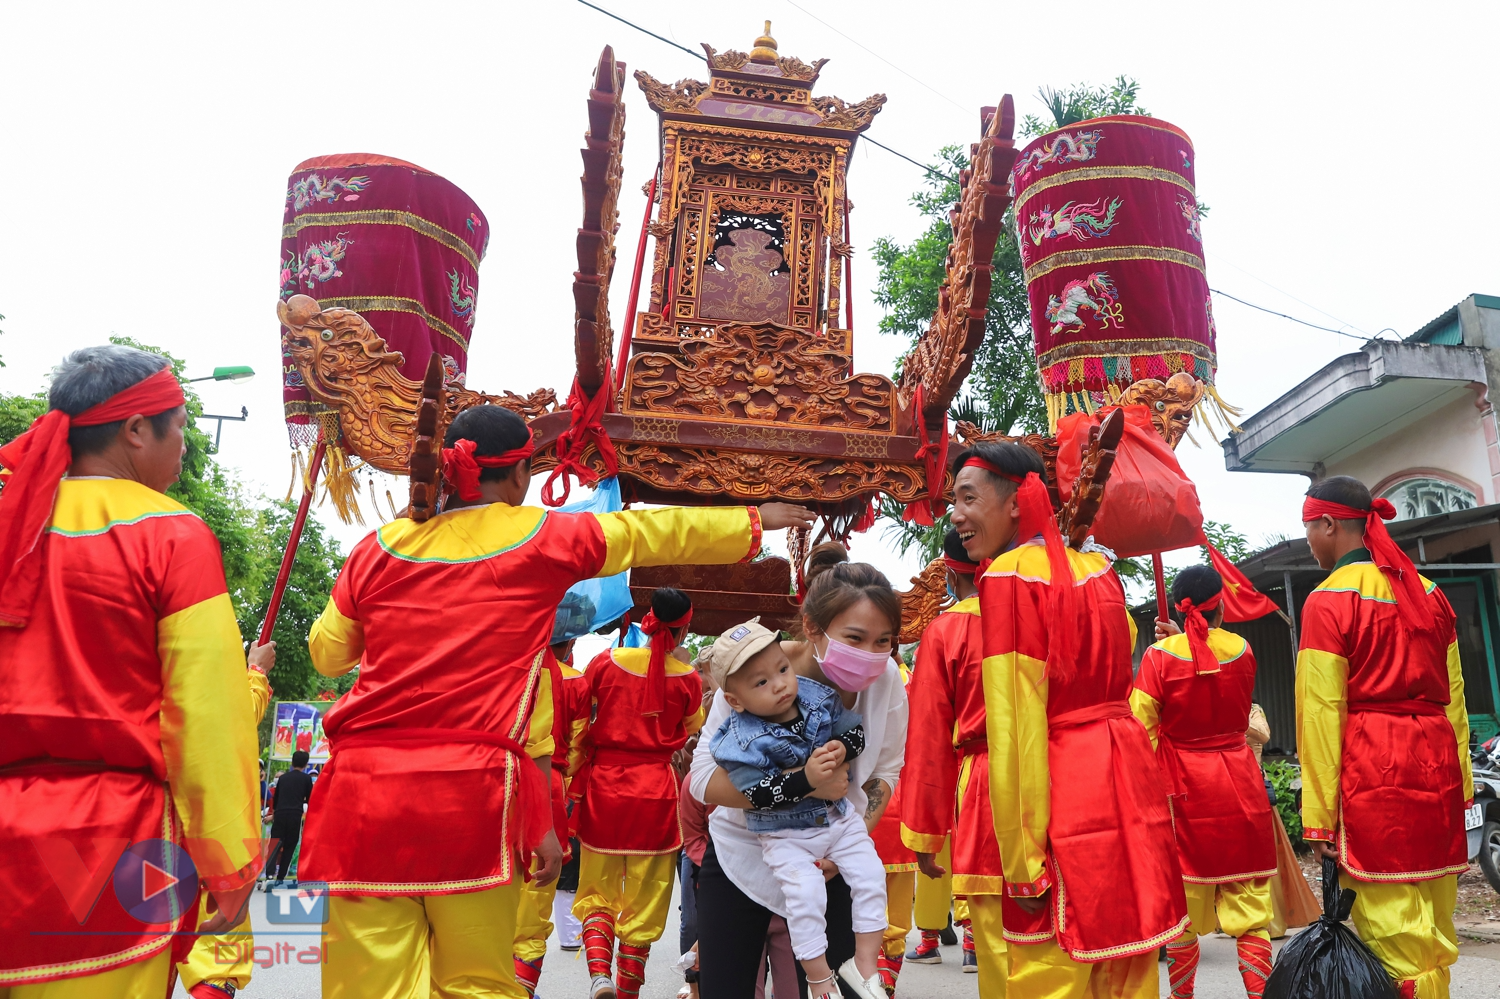 Hàng nghìn người rước tượng Trần Hưng Đạo trong lễ hội truyền thống Bạch Đằng - Ảnh 11.